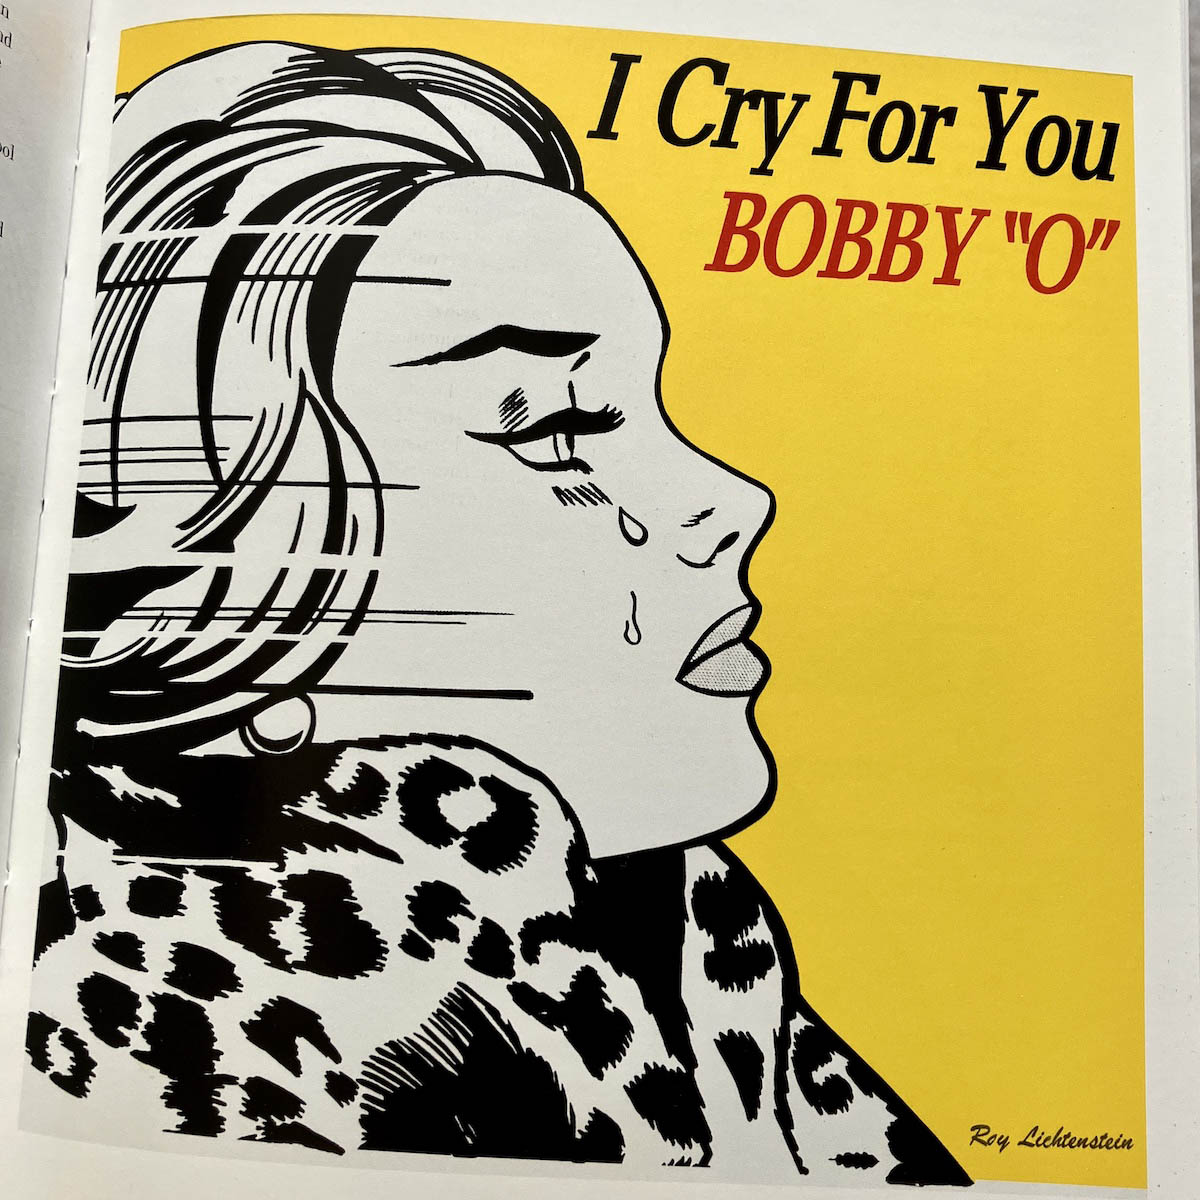 Roy Lichtenstein-designed album cover for Bobby "O"